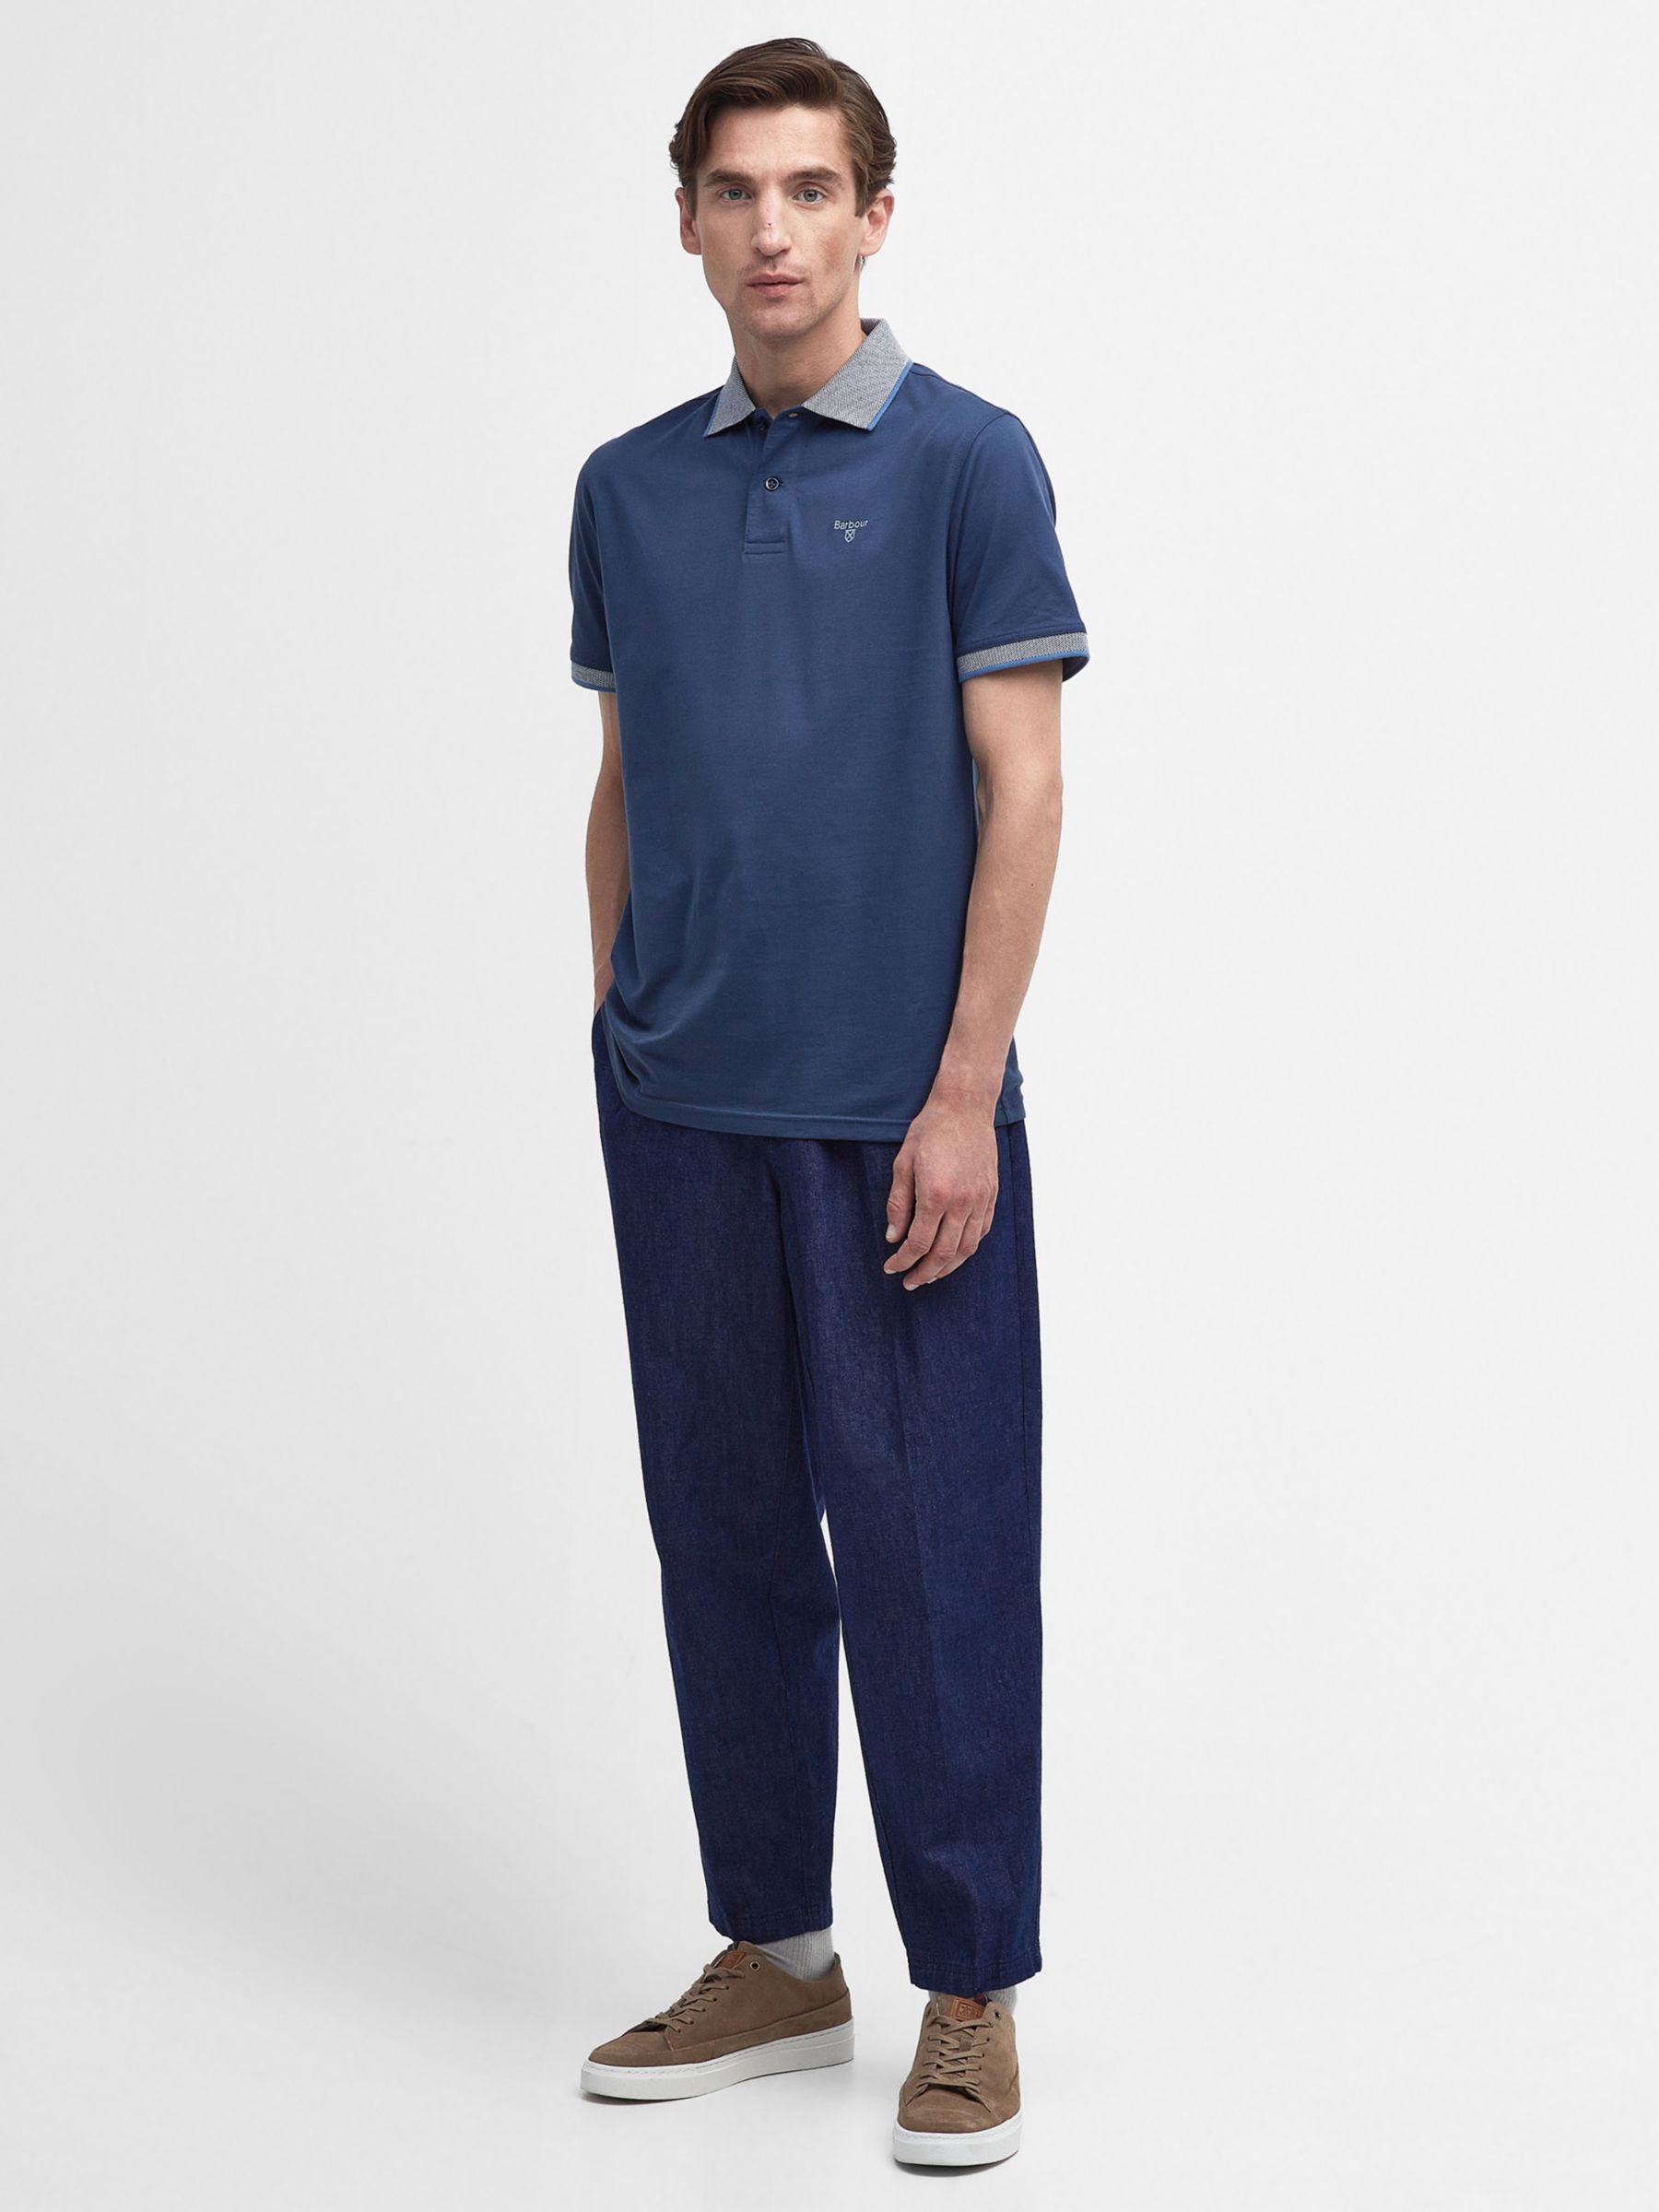 Barbour Cornsay Polo Shirt, Denim Blue, XL